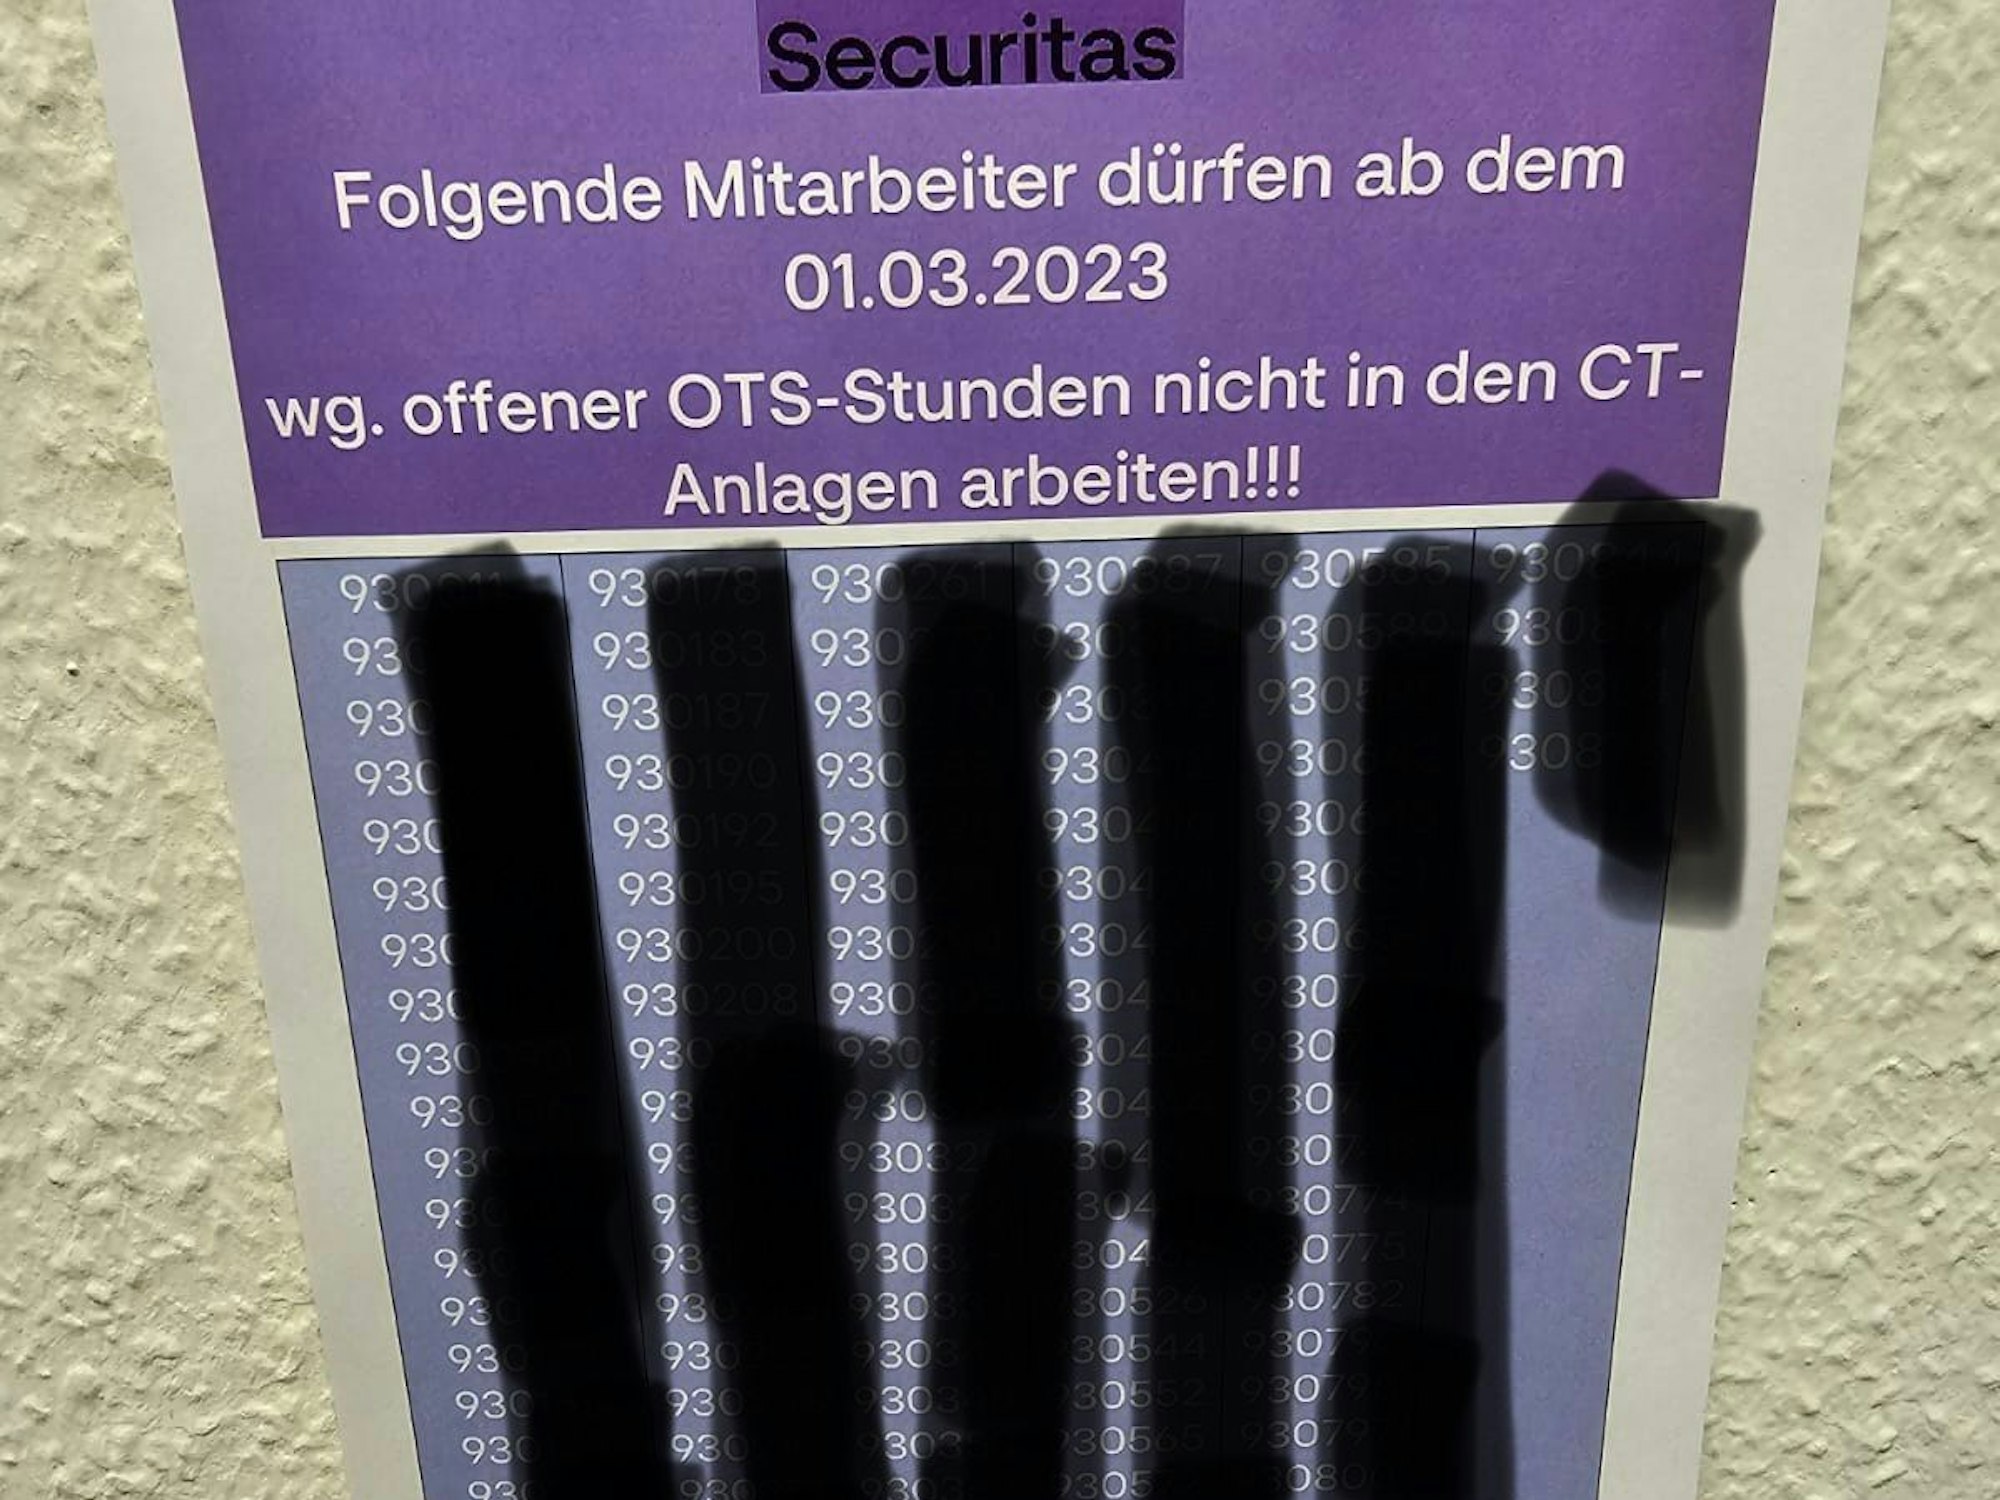 Aushang im Pausenraum des Sicherheitsdienstes Securitas am Flughafen Köln/Bonn.